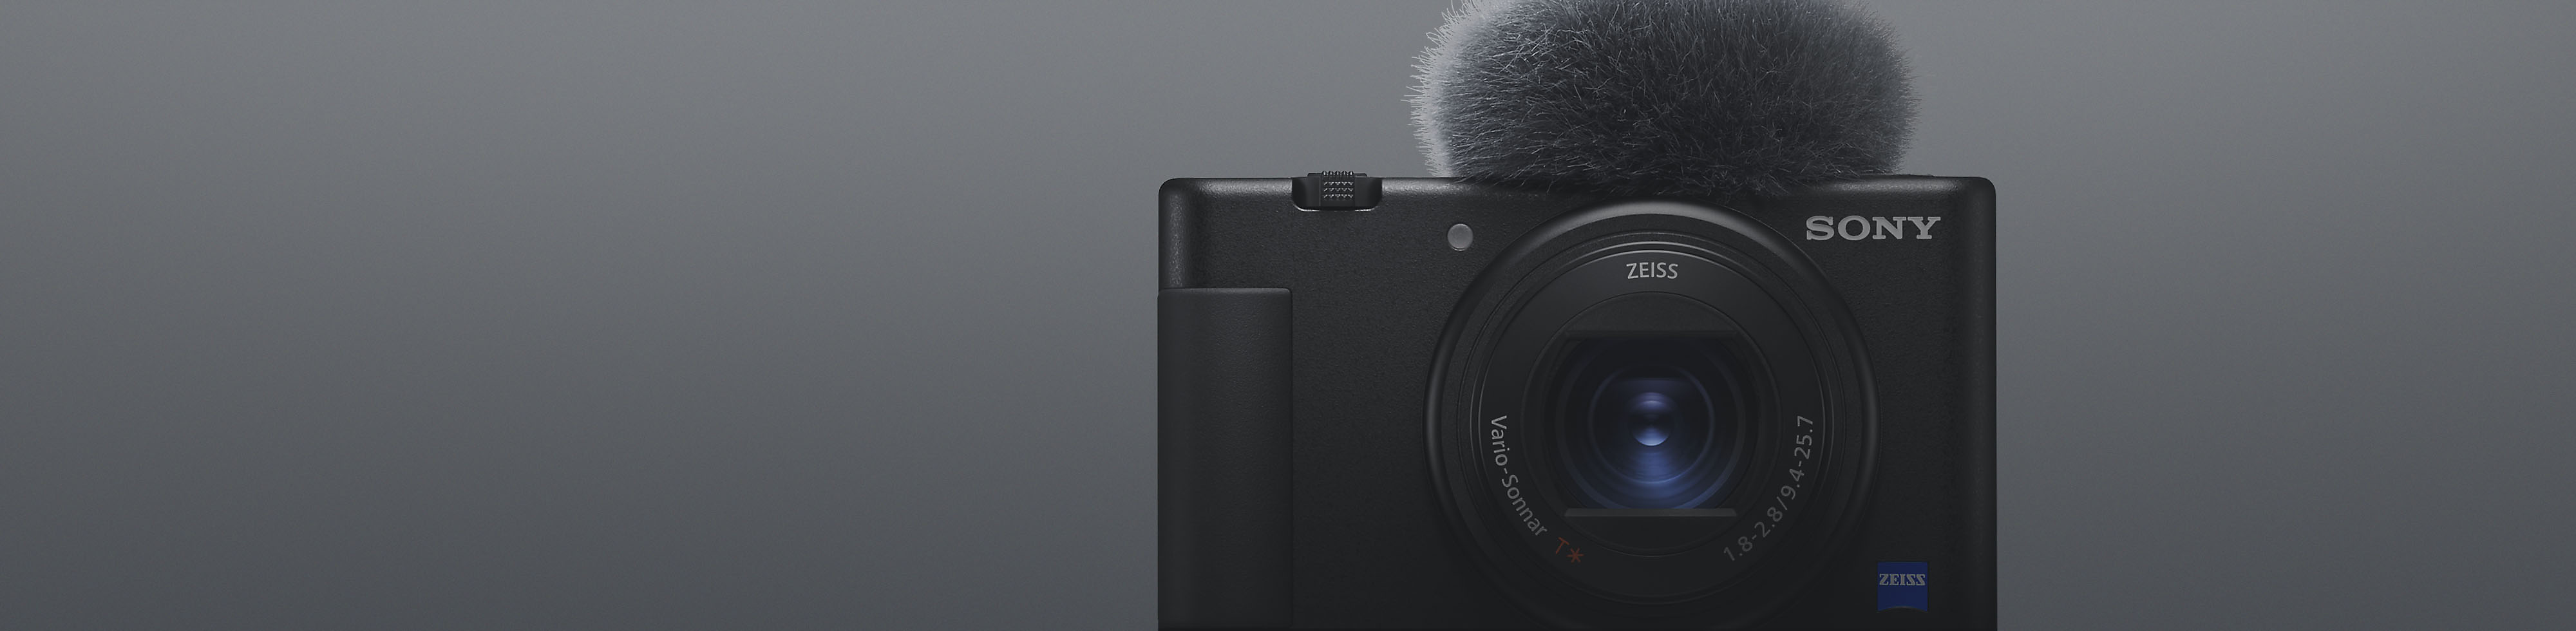 Záber spredu na čierny kompaktný fotoaparát Sony s pripojeným mikrofónom